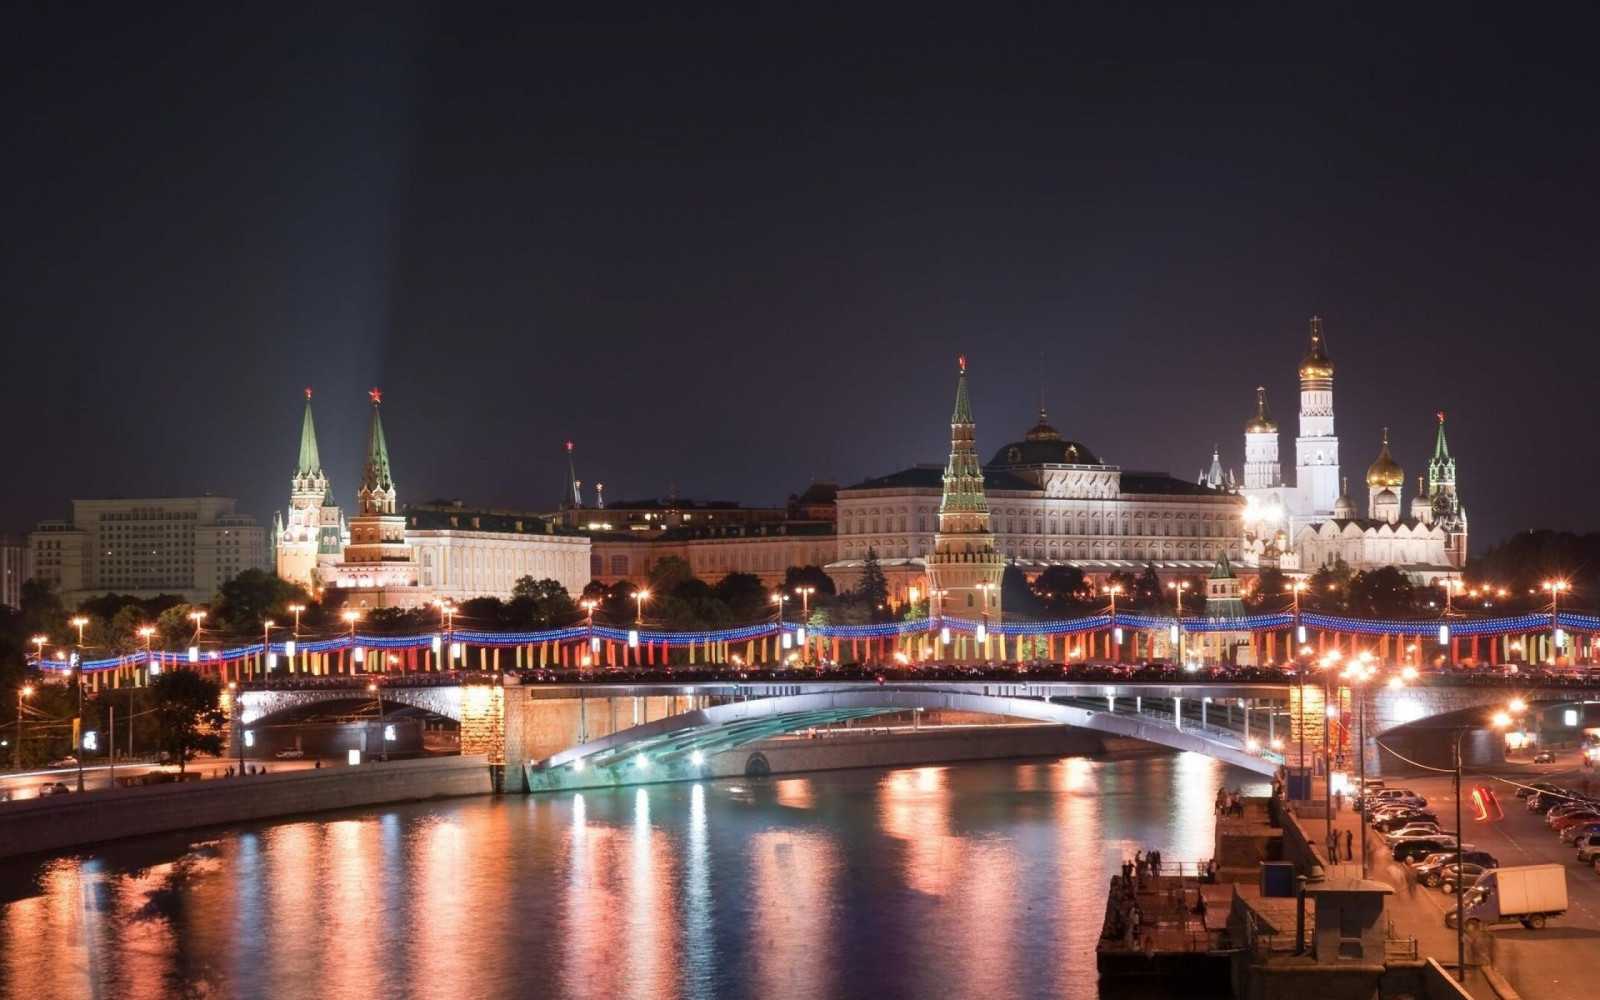 Топ-10 самых красивых городов россии: рейтинг на фото